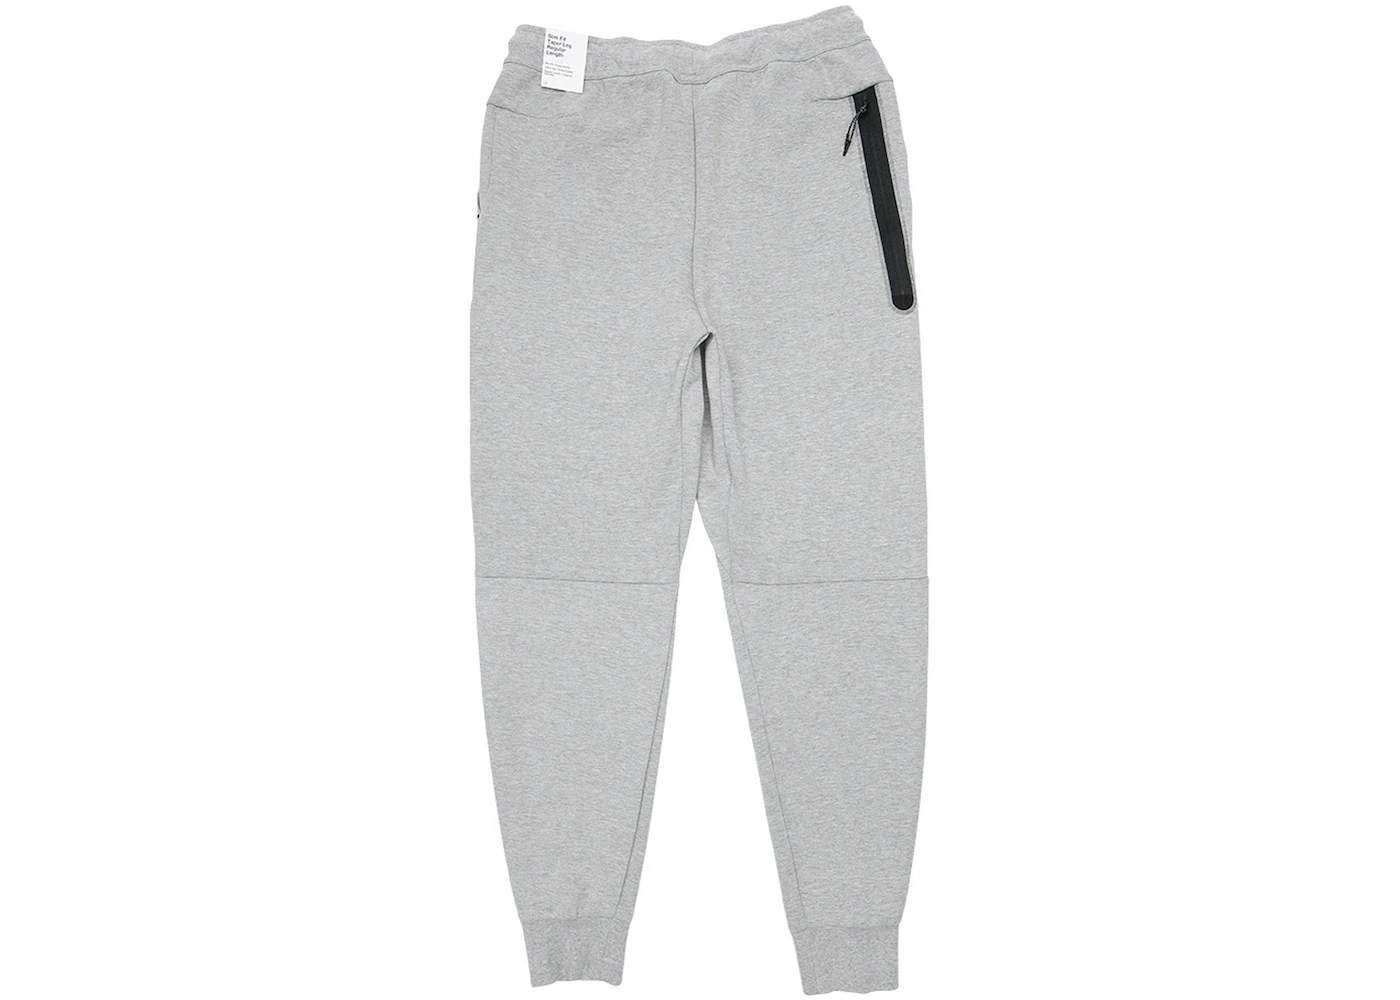 Nike Sportswear Tech Fleece Joggers Dark Grey Heather/Black Men's - US